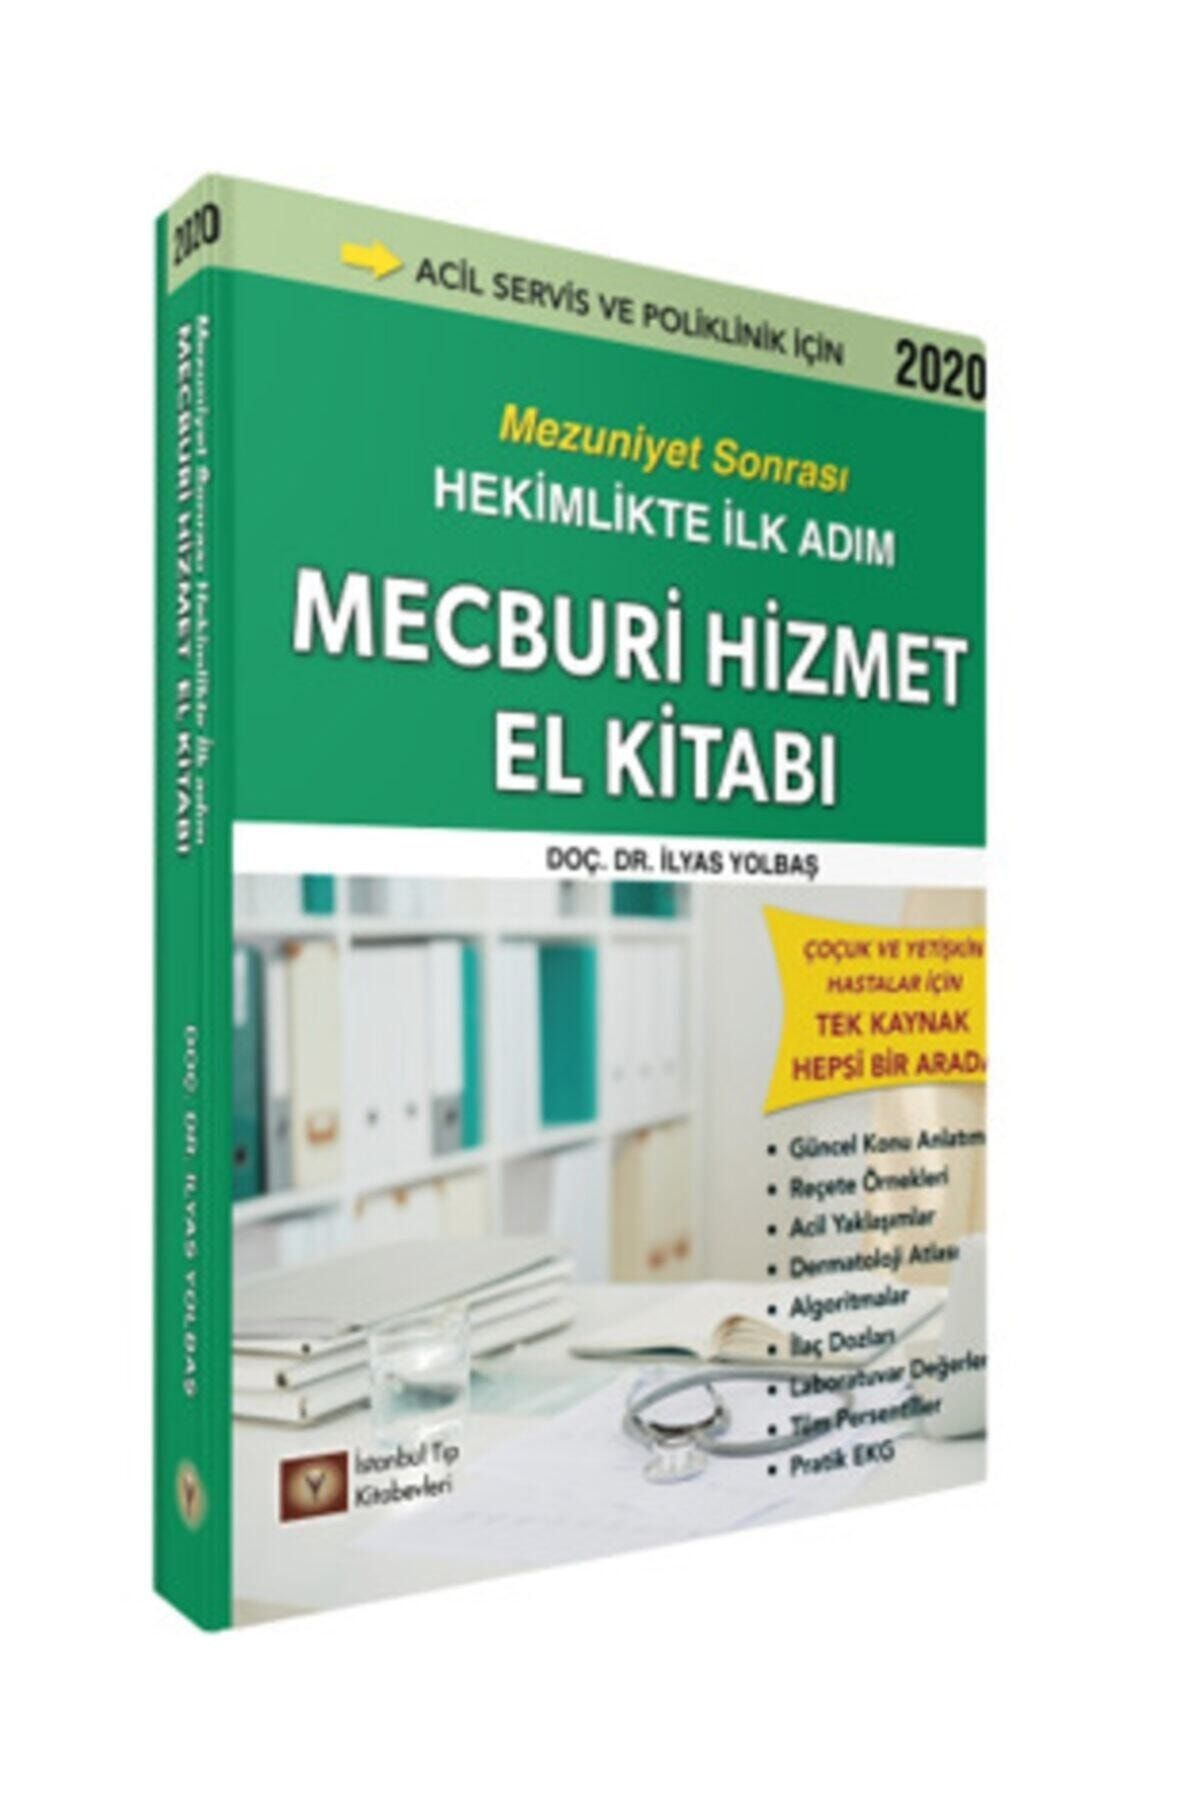 İstanbul Tıp Kitabevi Mecburi Hizmet El Kitabı Mezuniyet Sonrası Hekimlikte Ilk Adım - Ilyas Yolbaş, 2020